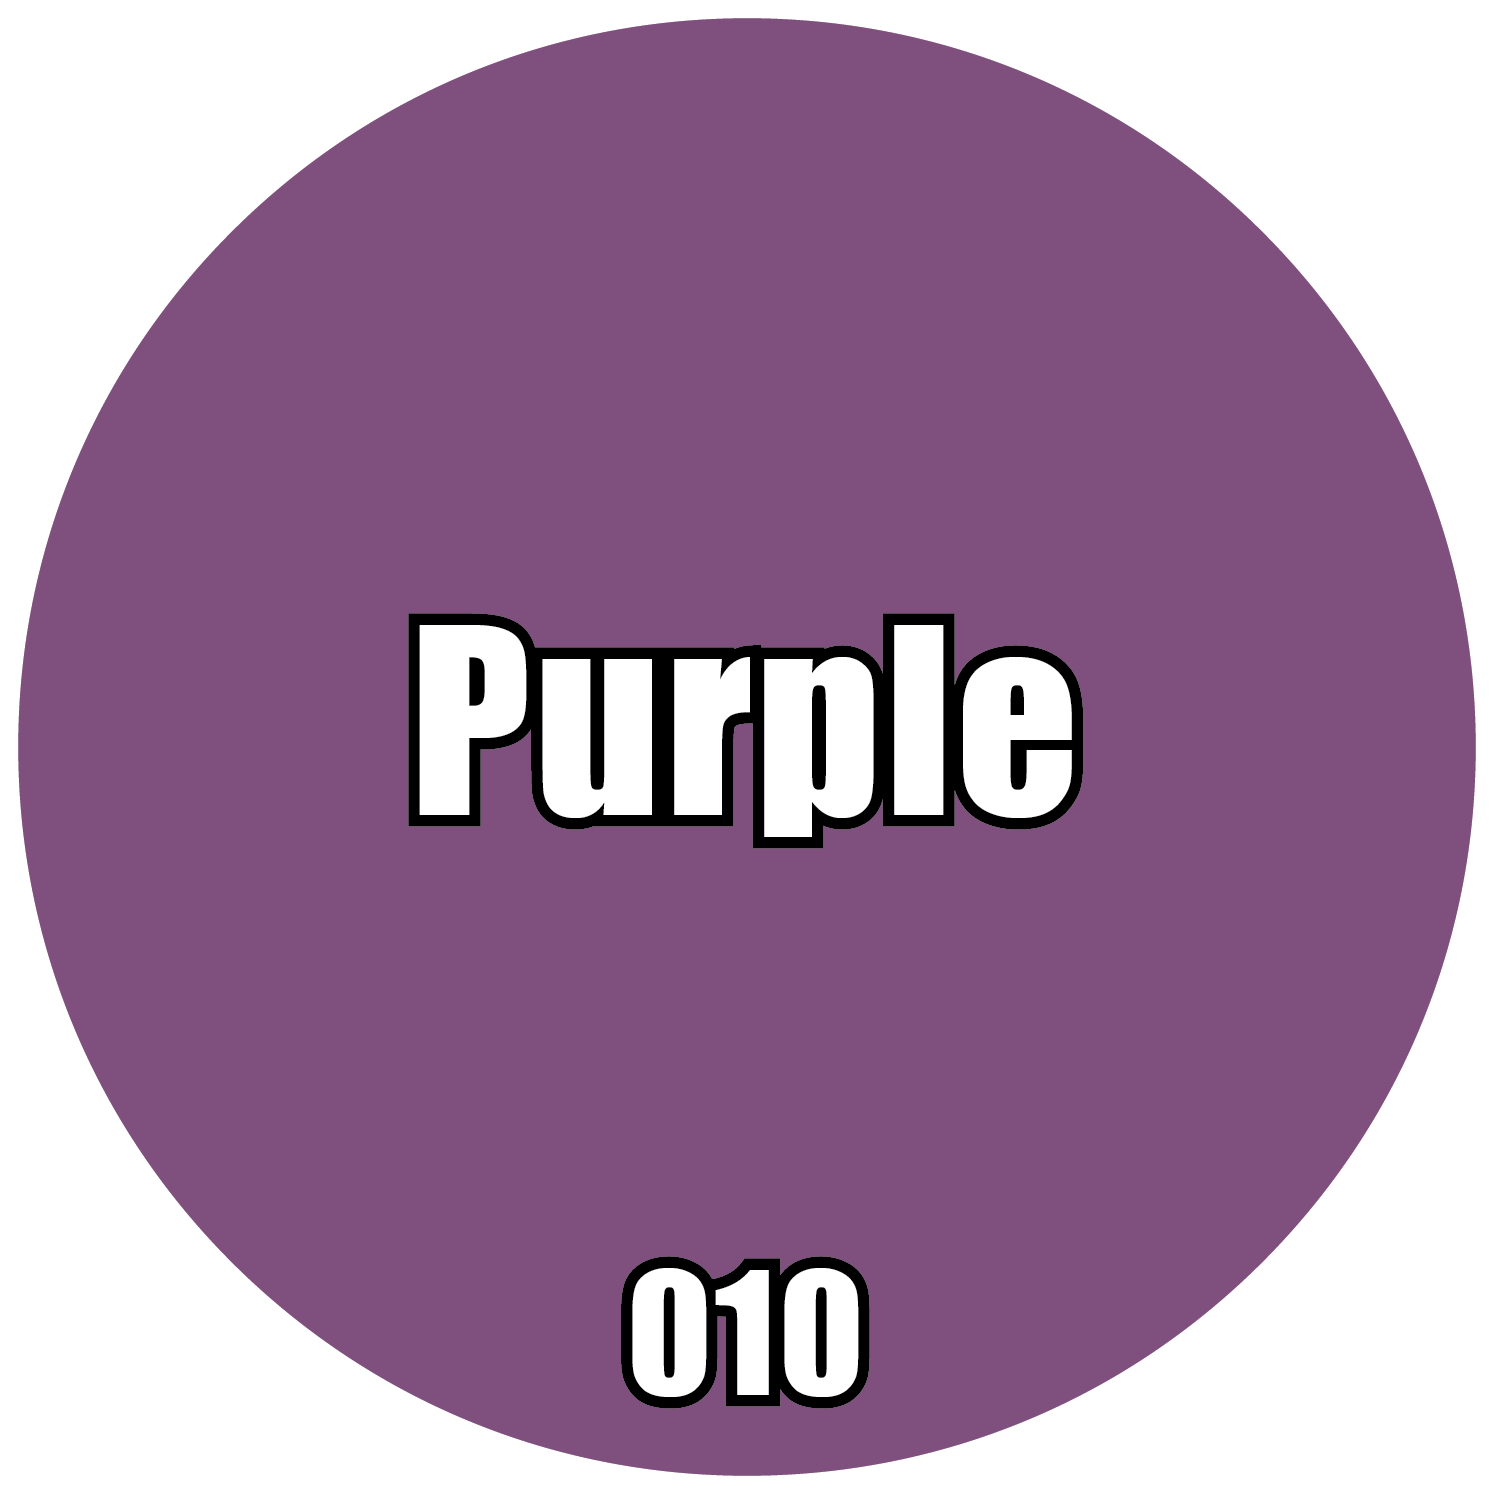 010-Pro Acryl Purple